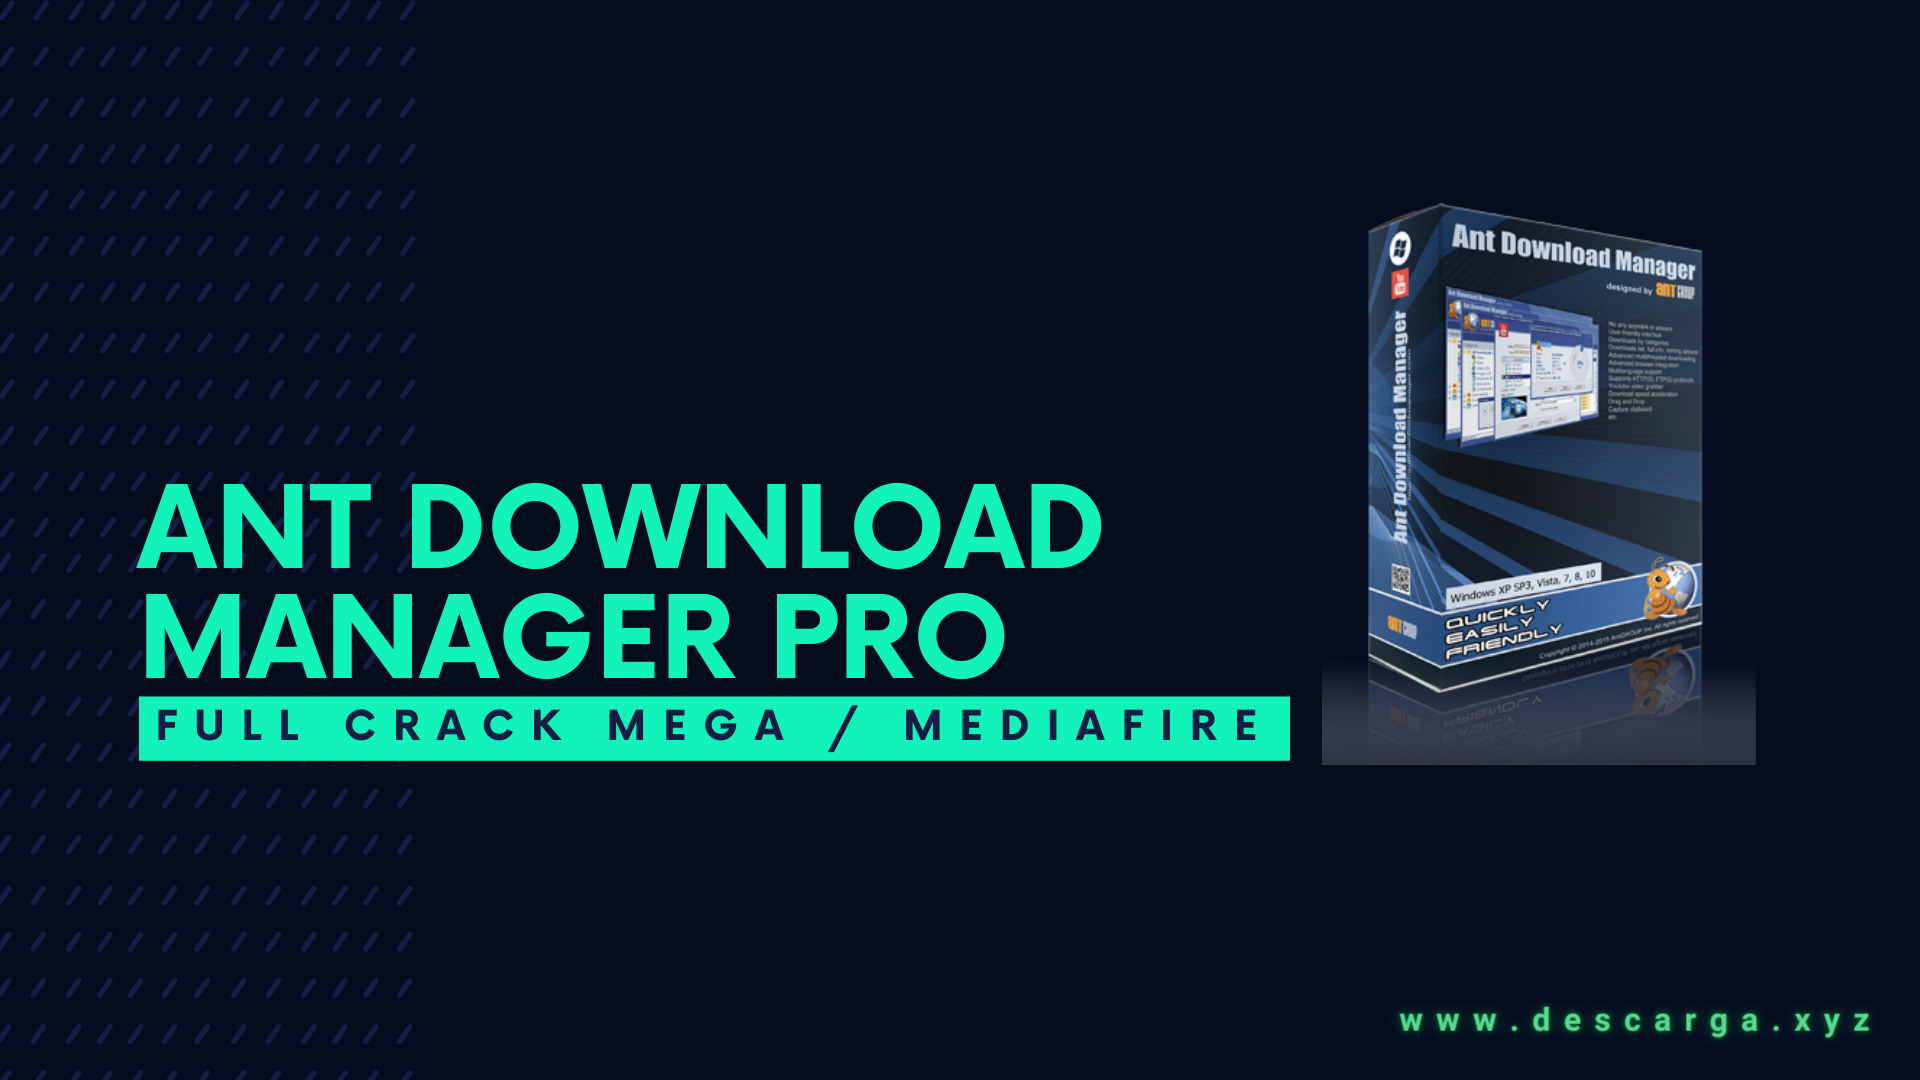 Ant Download Manager Pro Full Crack Descargar Gratis por Mega